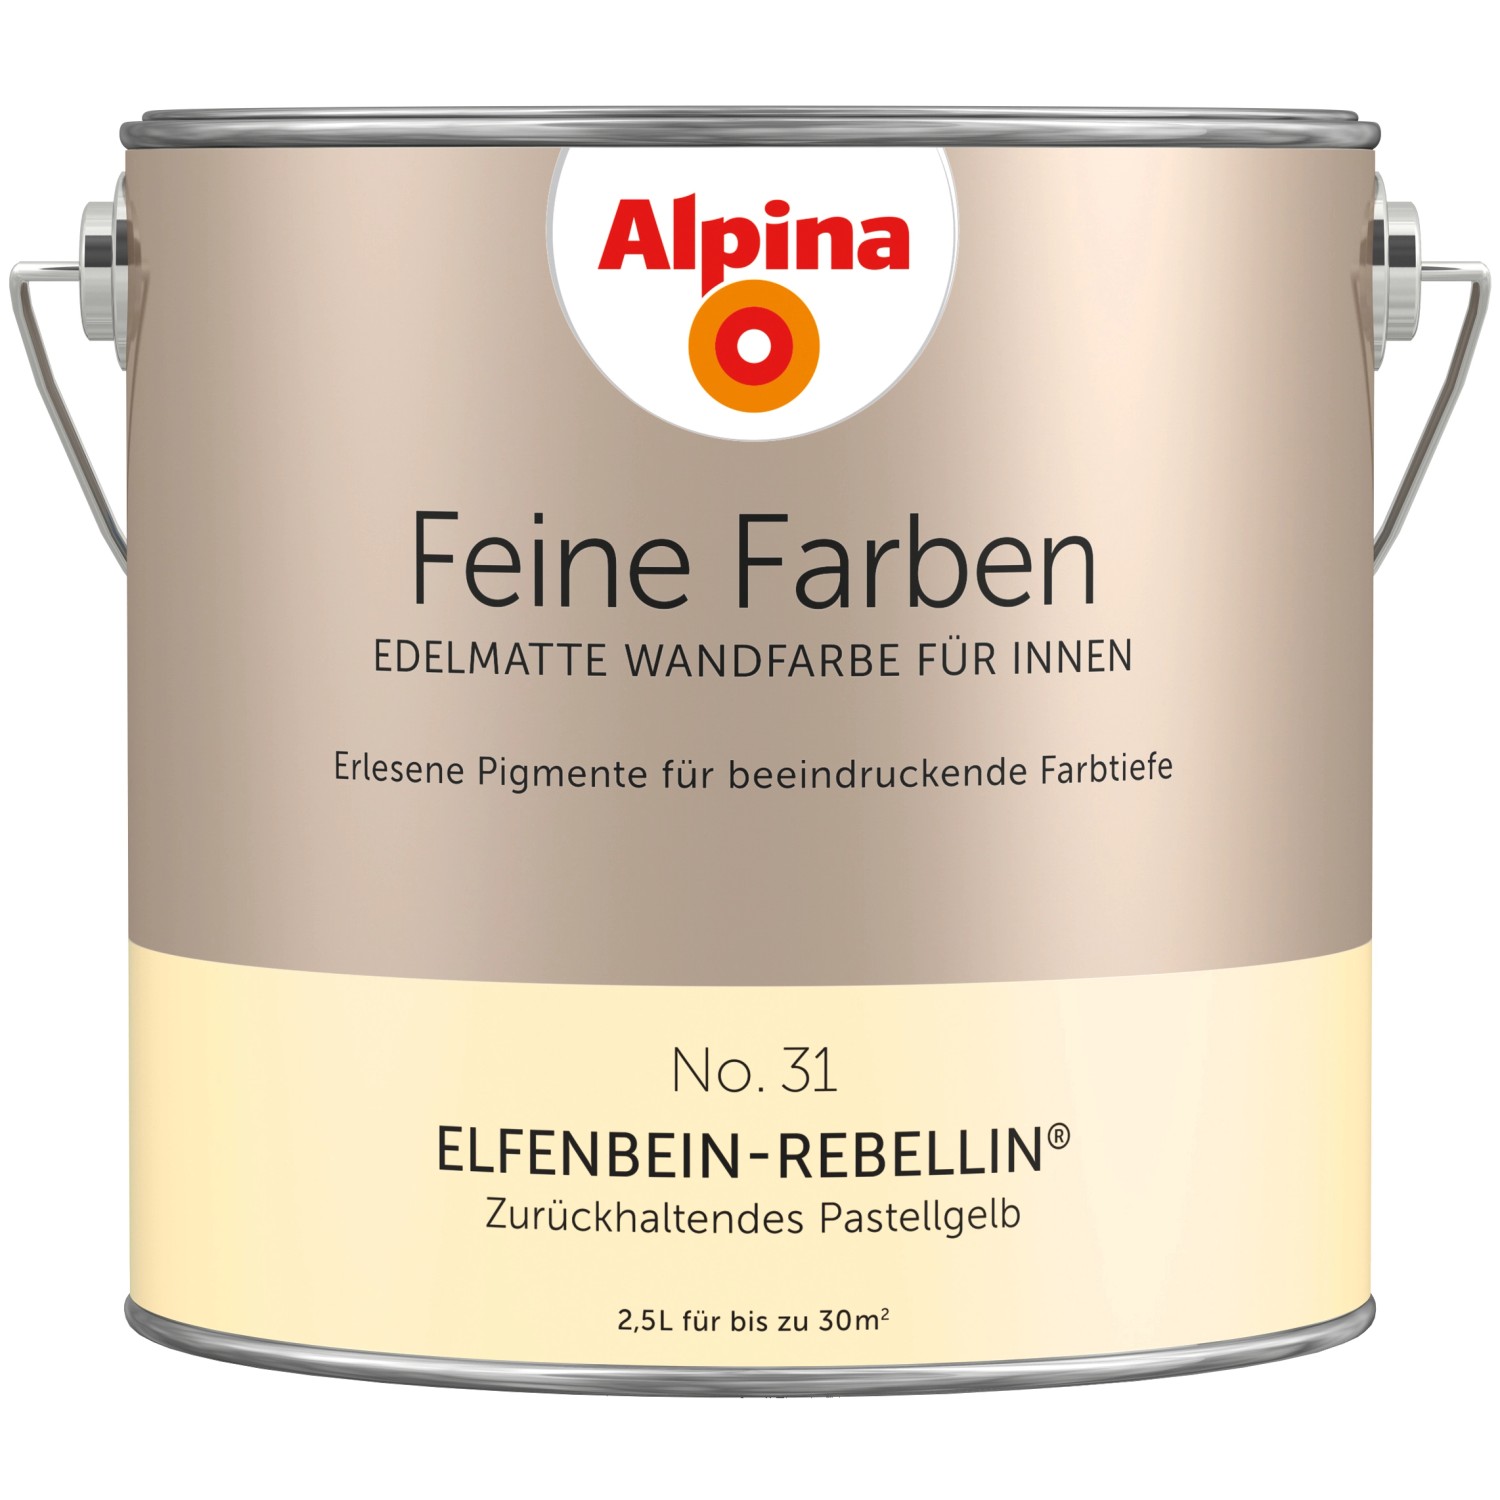 Alpina Feine Farben No. 31 Elfenbein-Rebellin® Pastellgelb edelmatt 2,5 l von Alpina